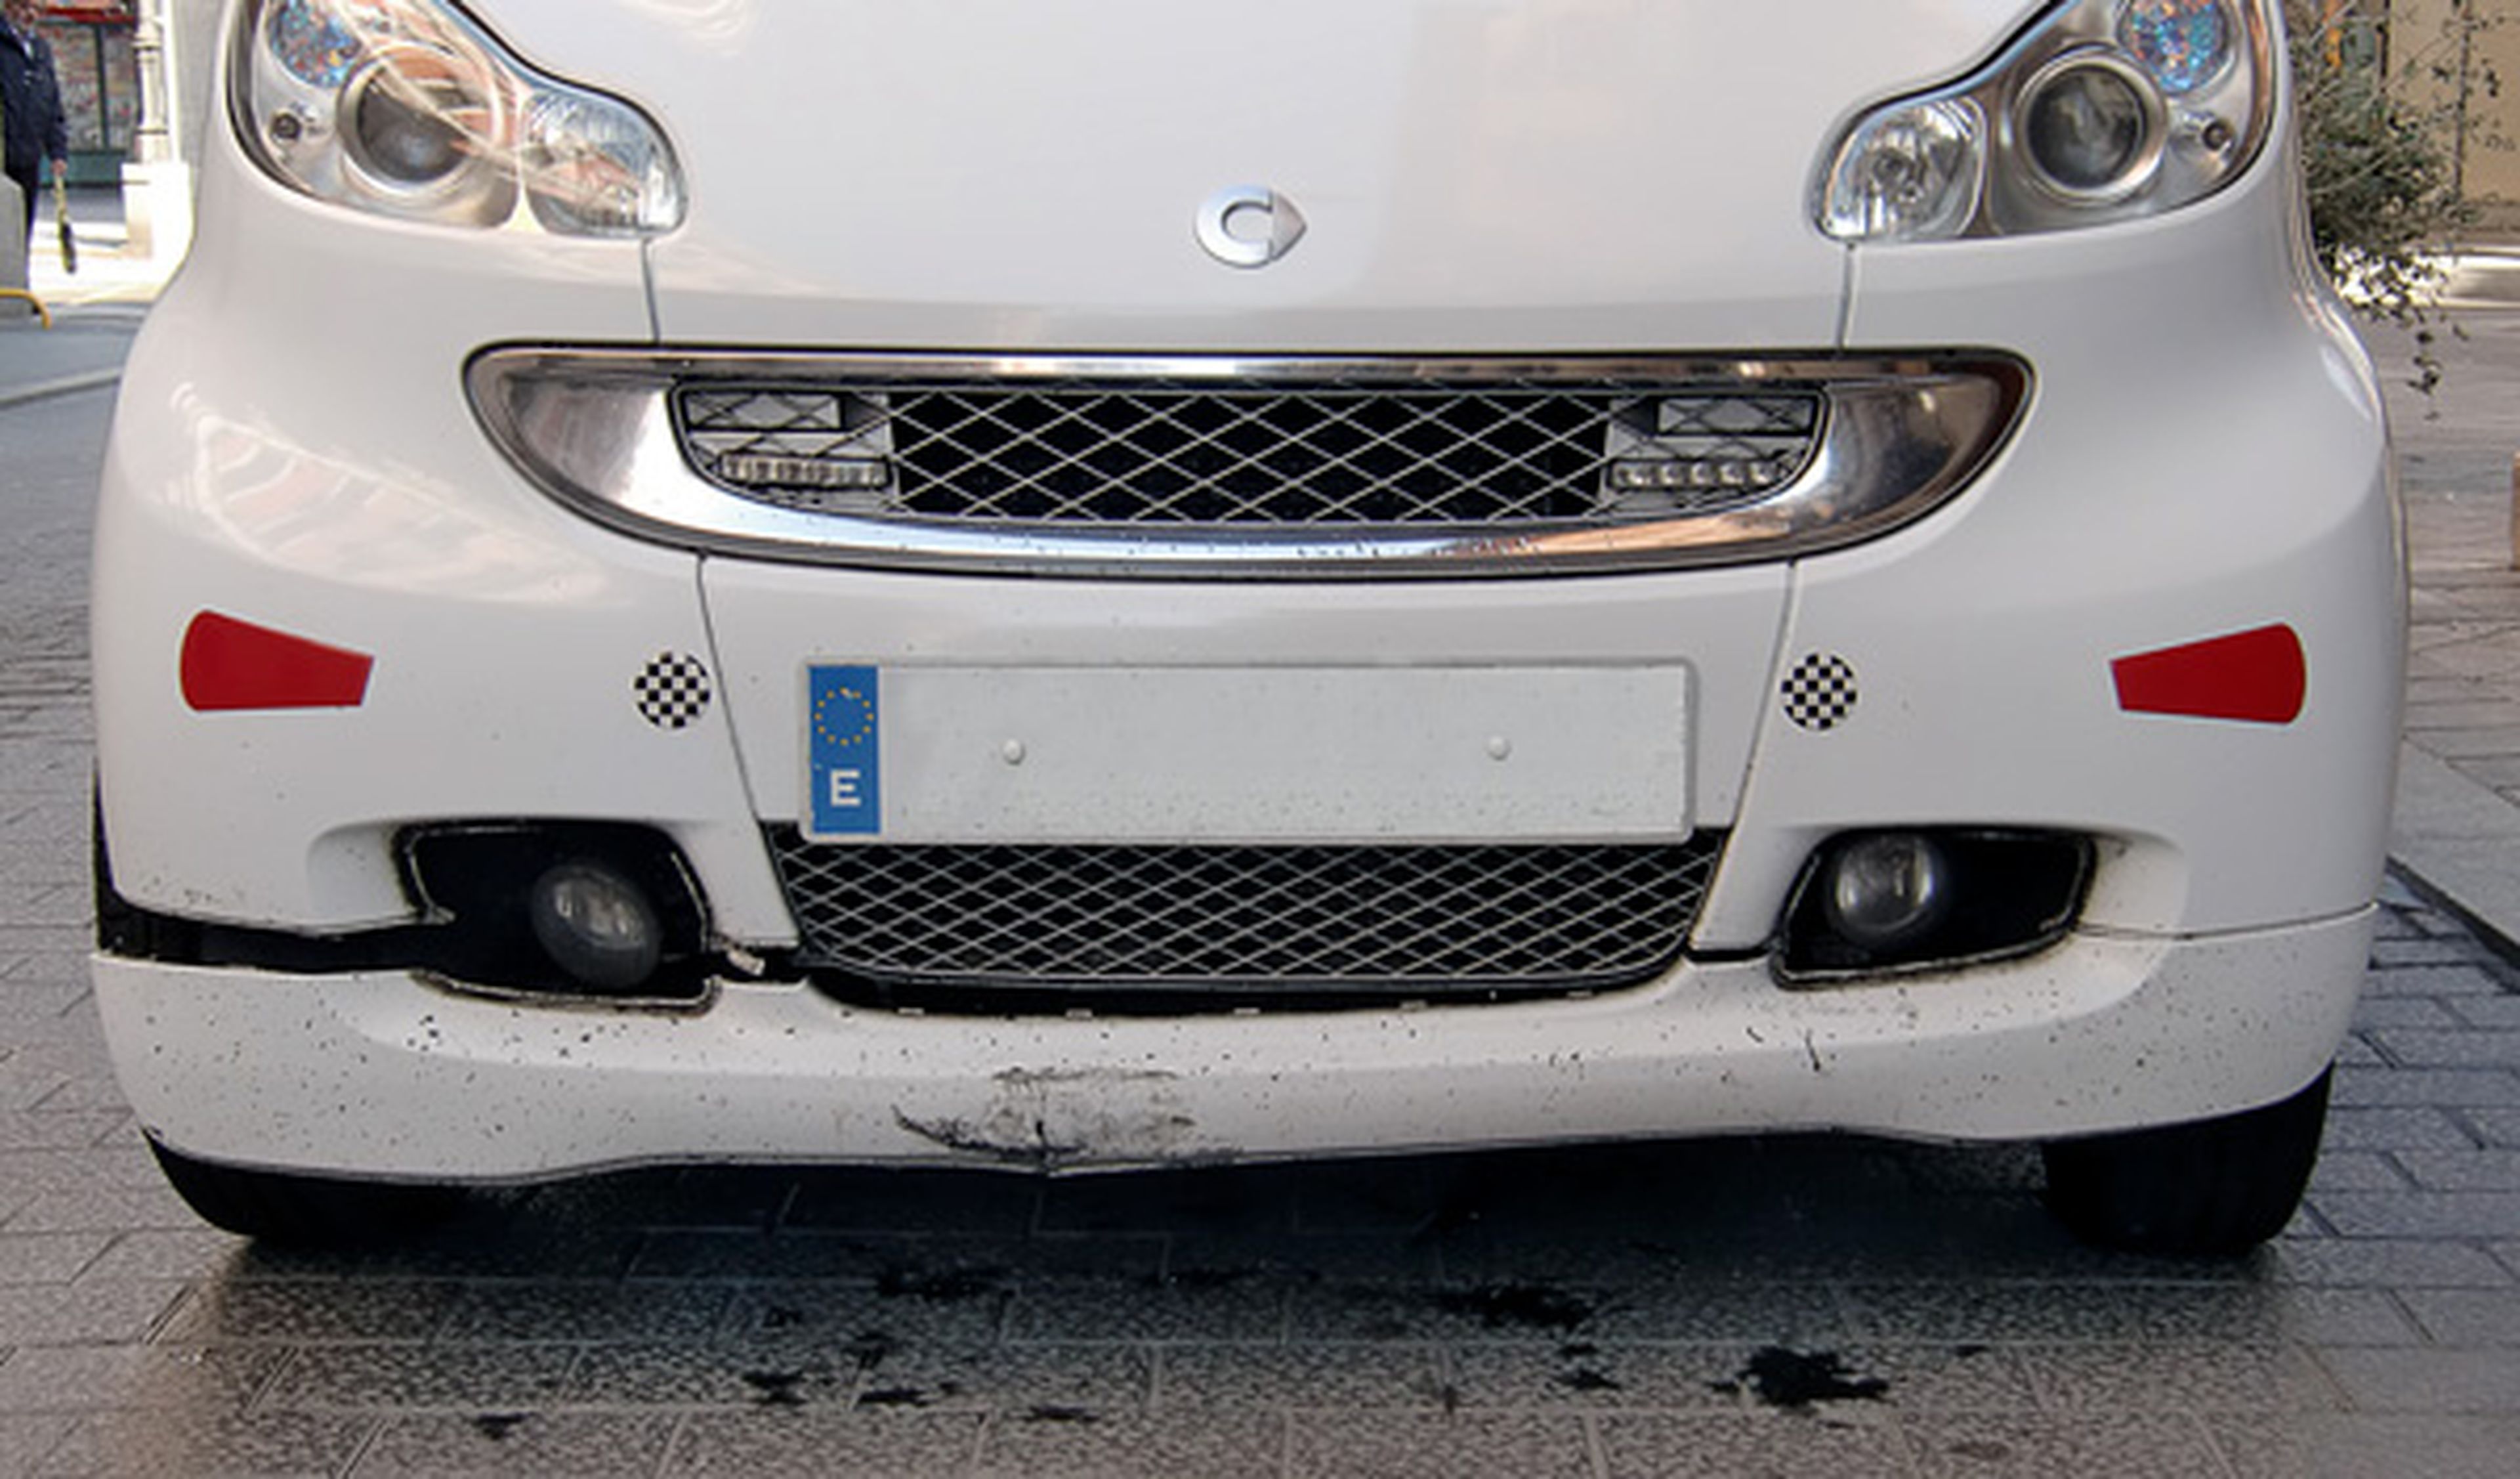 El bolardo asesino de Valladolid: 30 coches destrozados